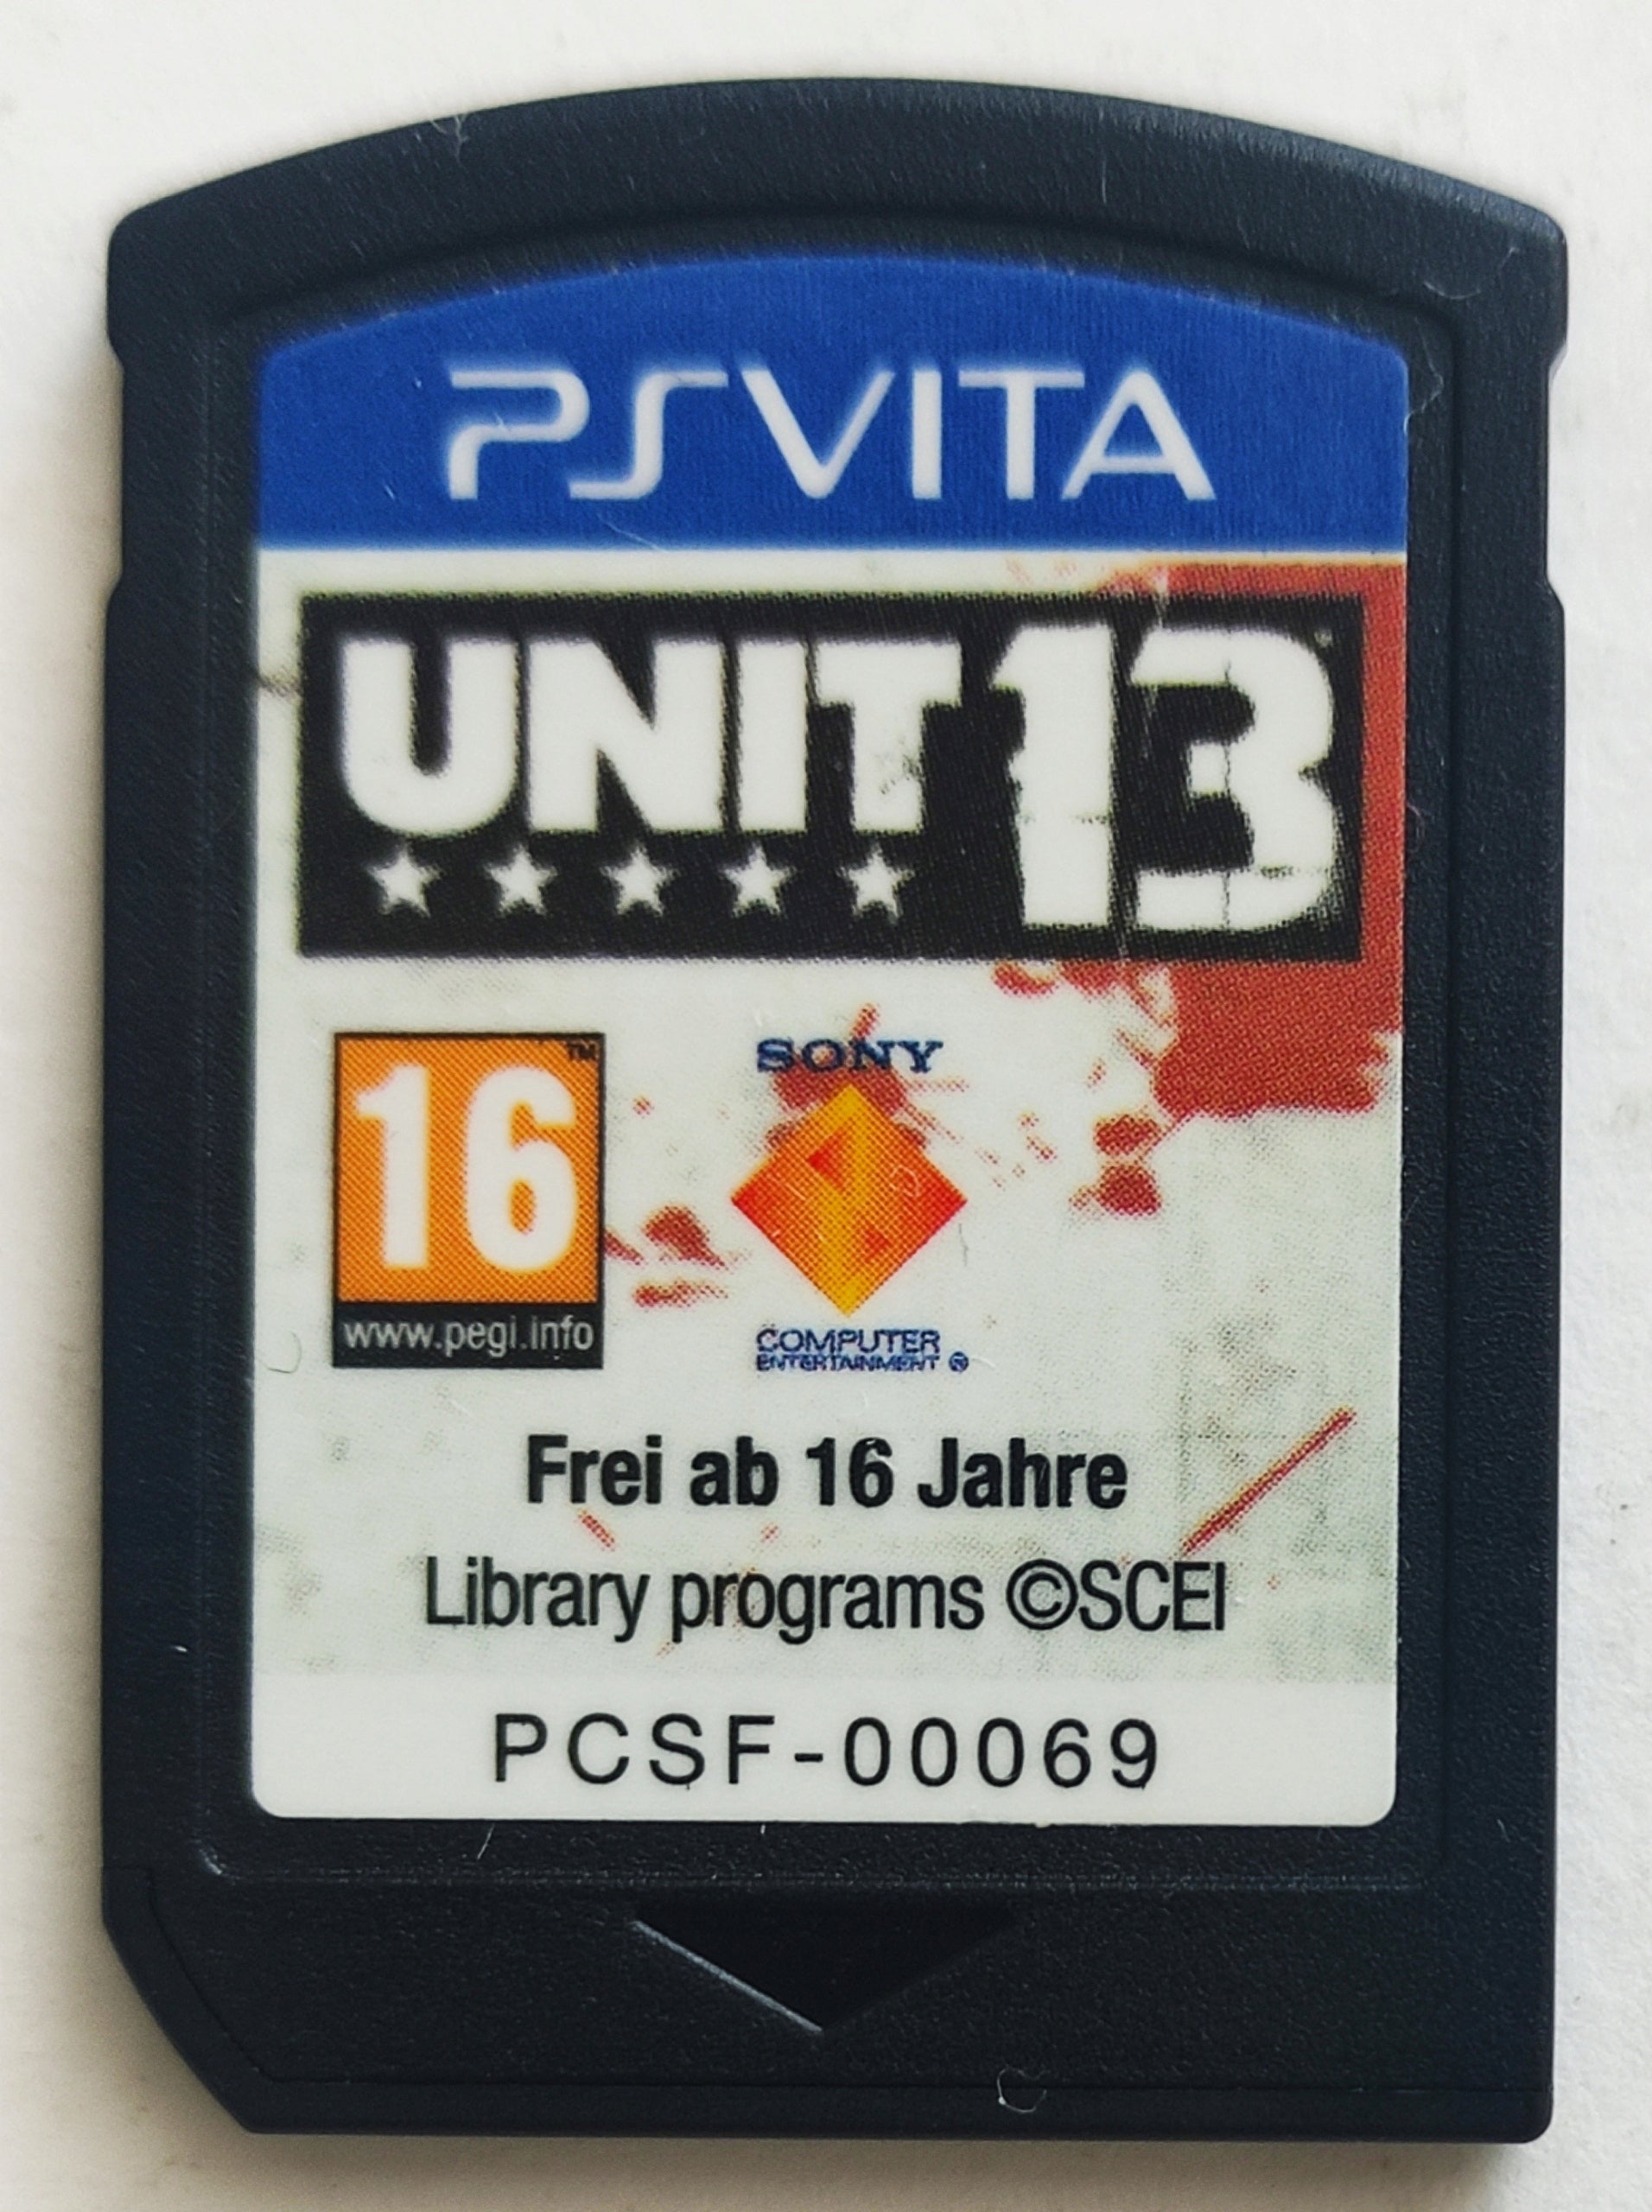 Game | Sony PSVITA | Unit 13